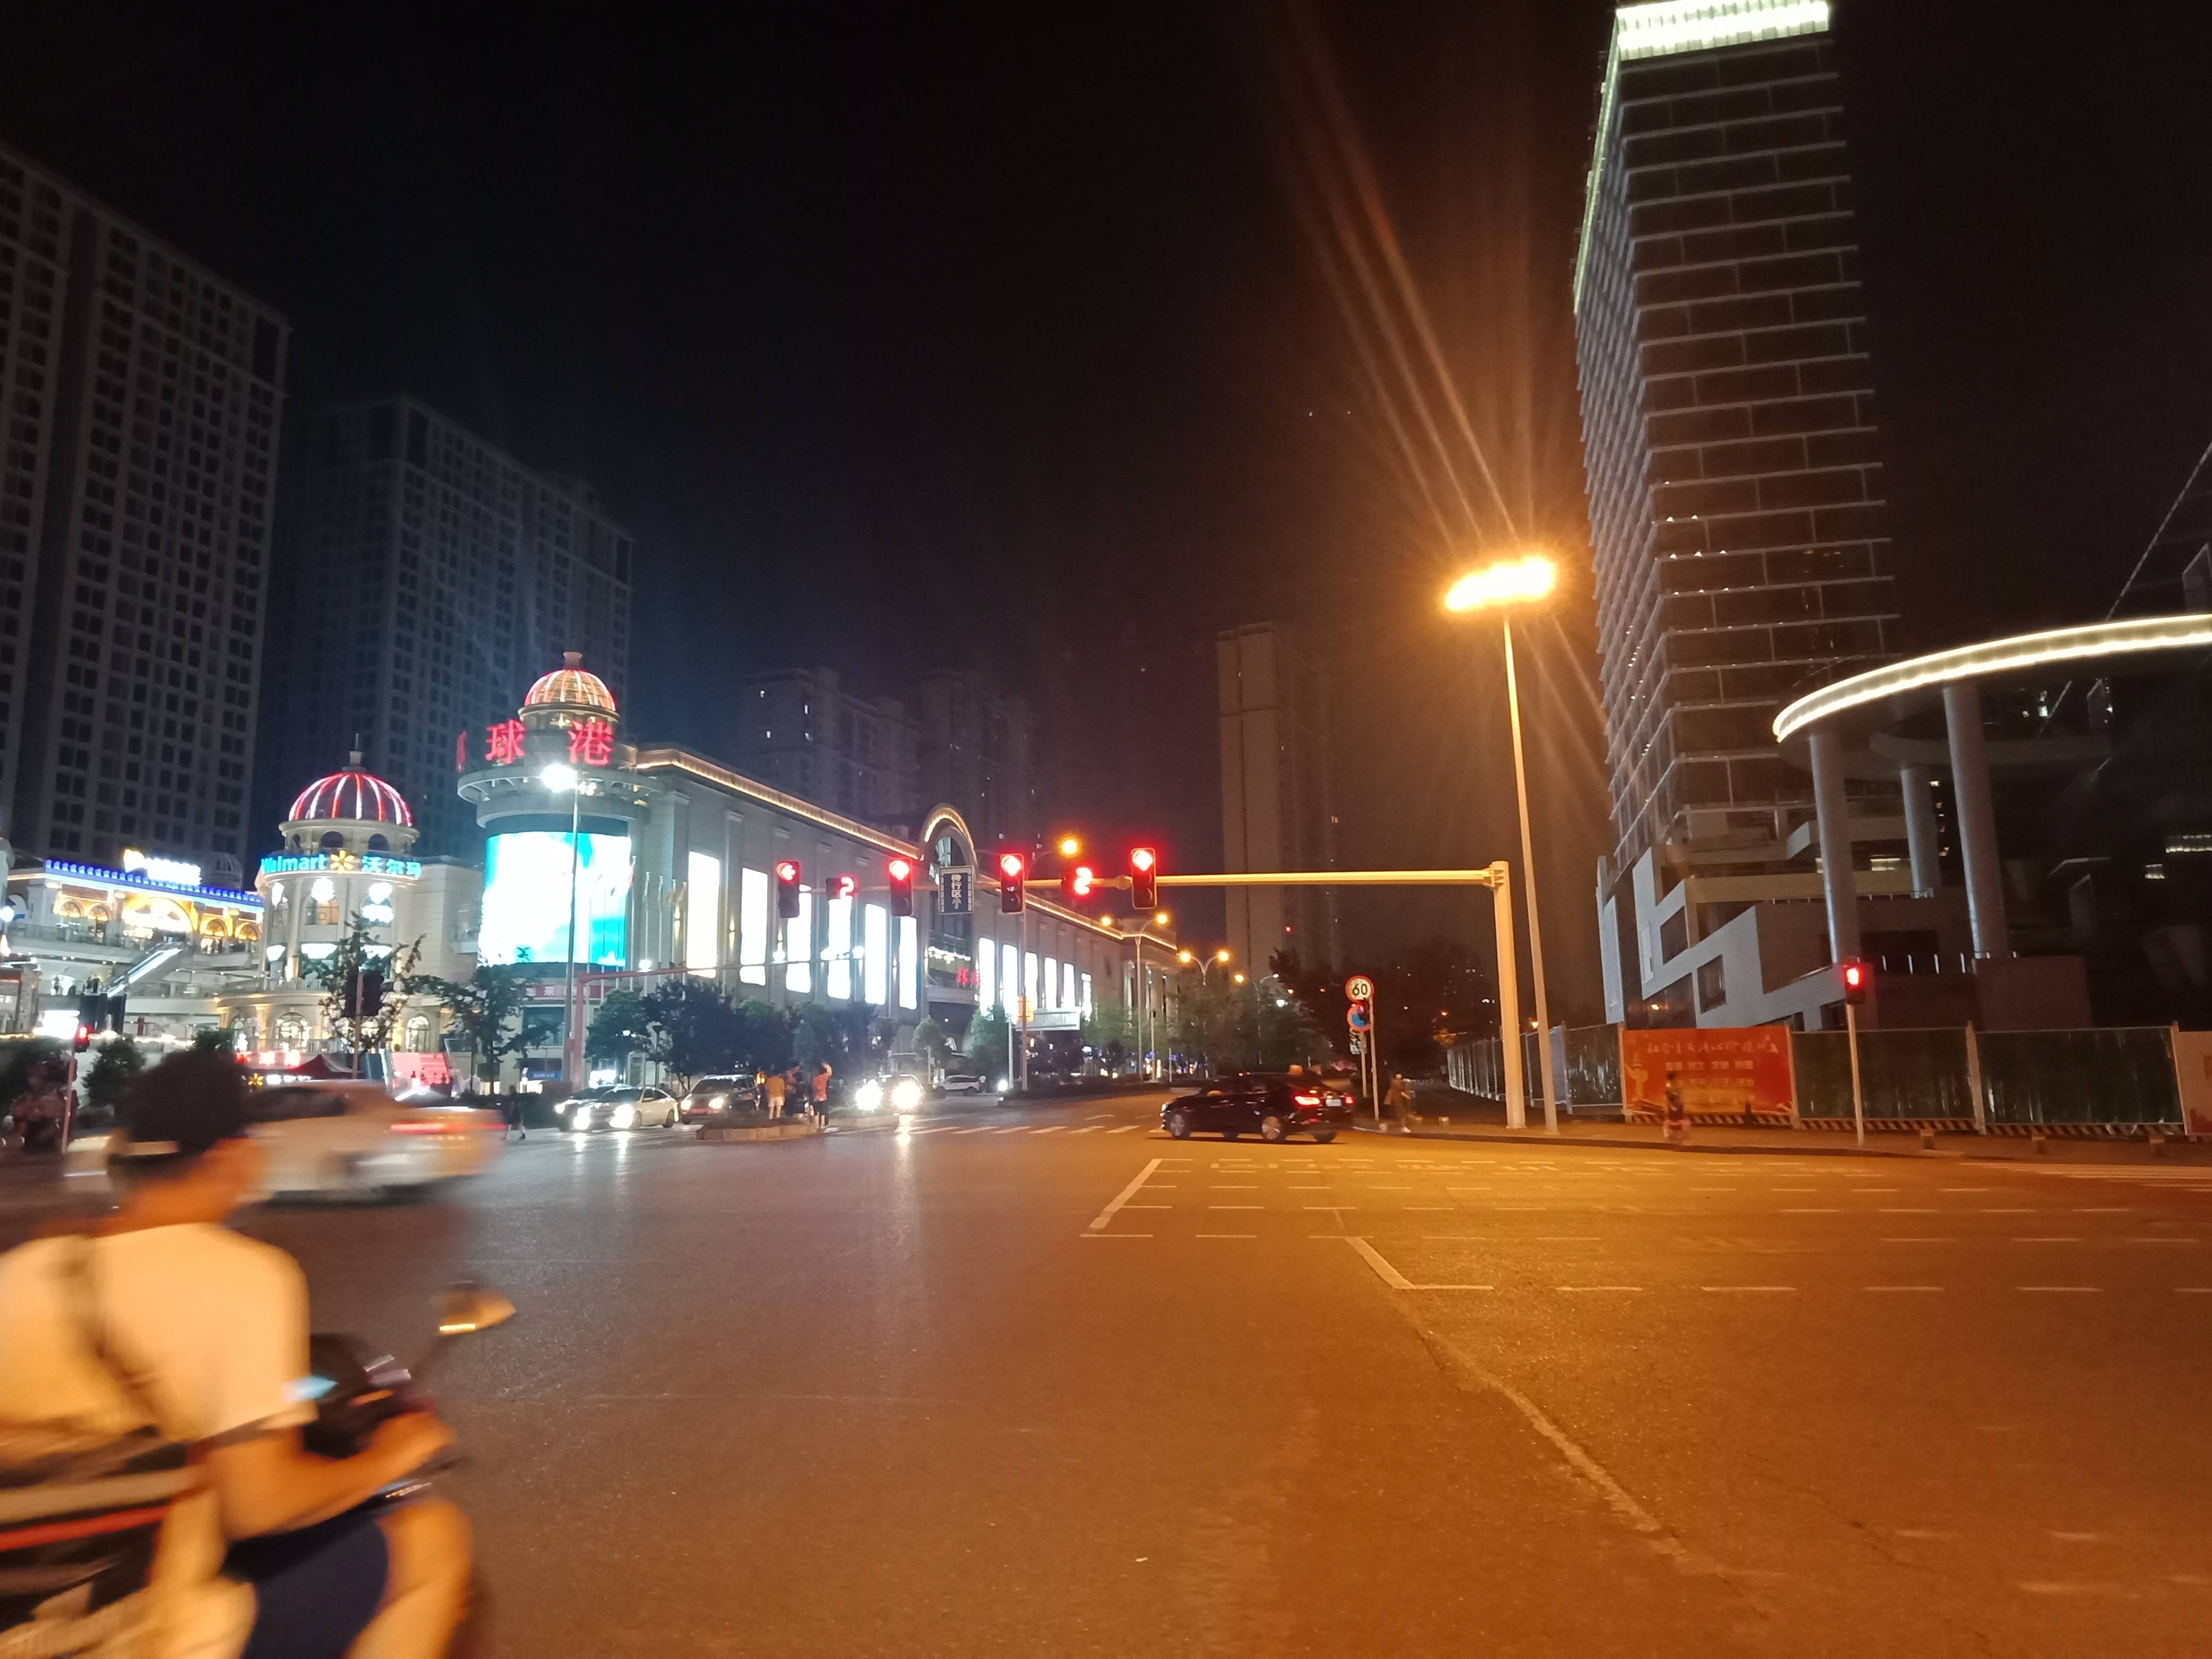 宜昌街道夜景图片